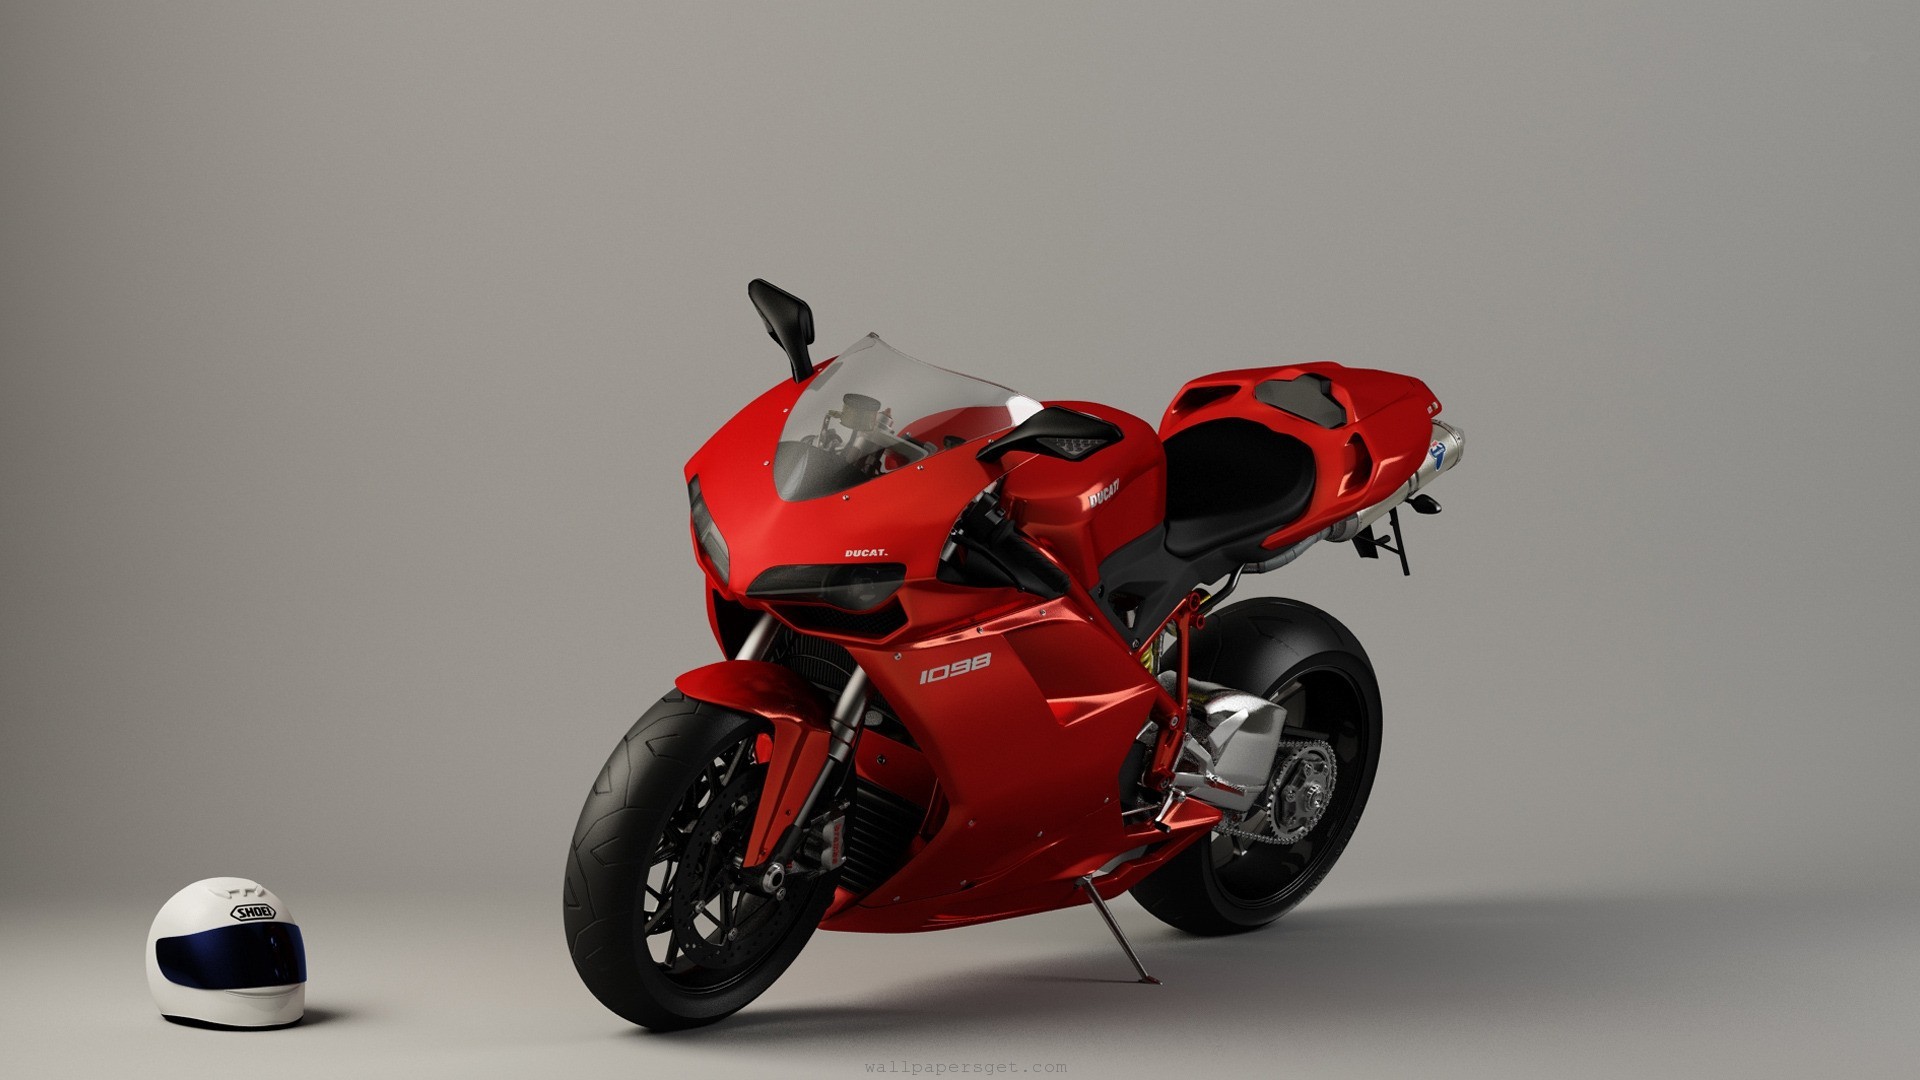 Télécharger des fonds d'écran Ducati 1098 HD